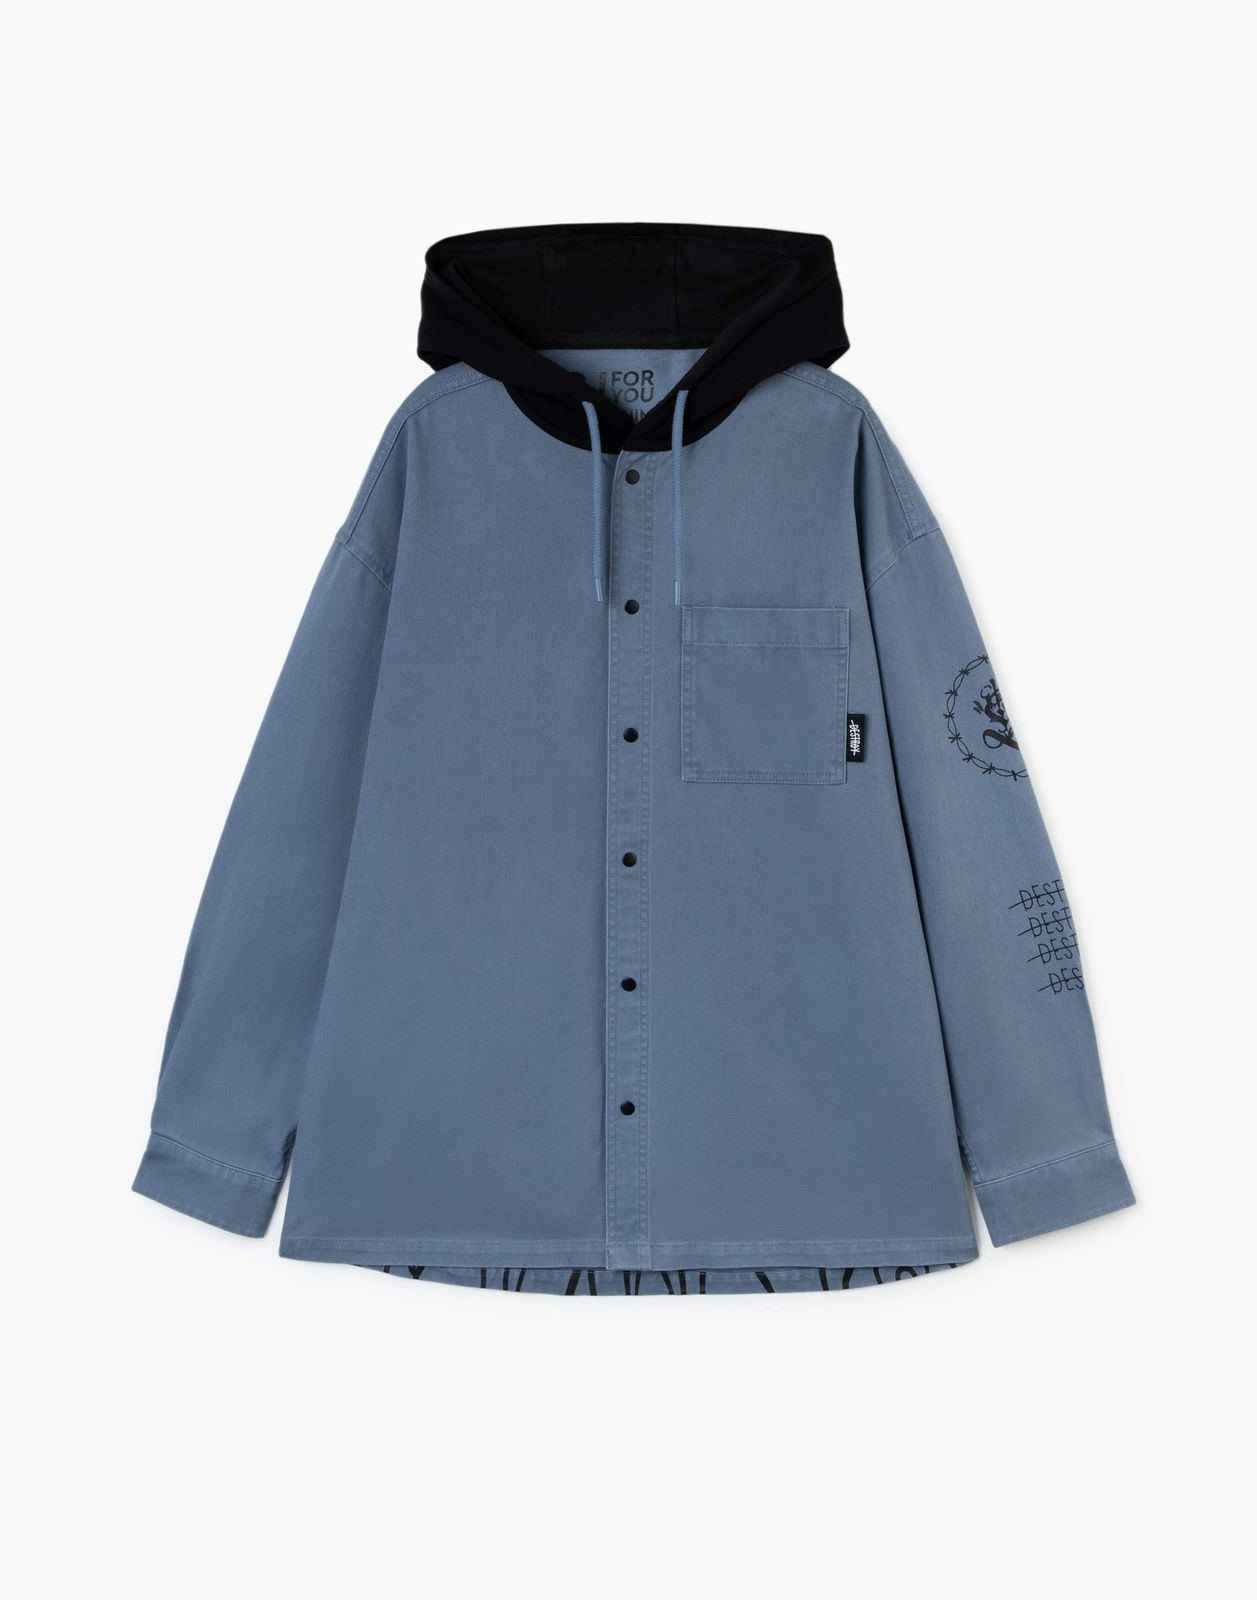 Джинсовый жакет (куртка) Gloria Jeans BJC002489 синий/серый 18+/182 для мальчика